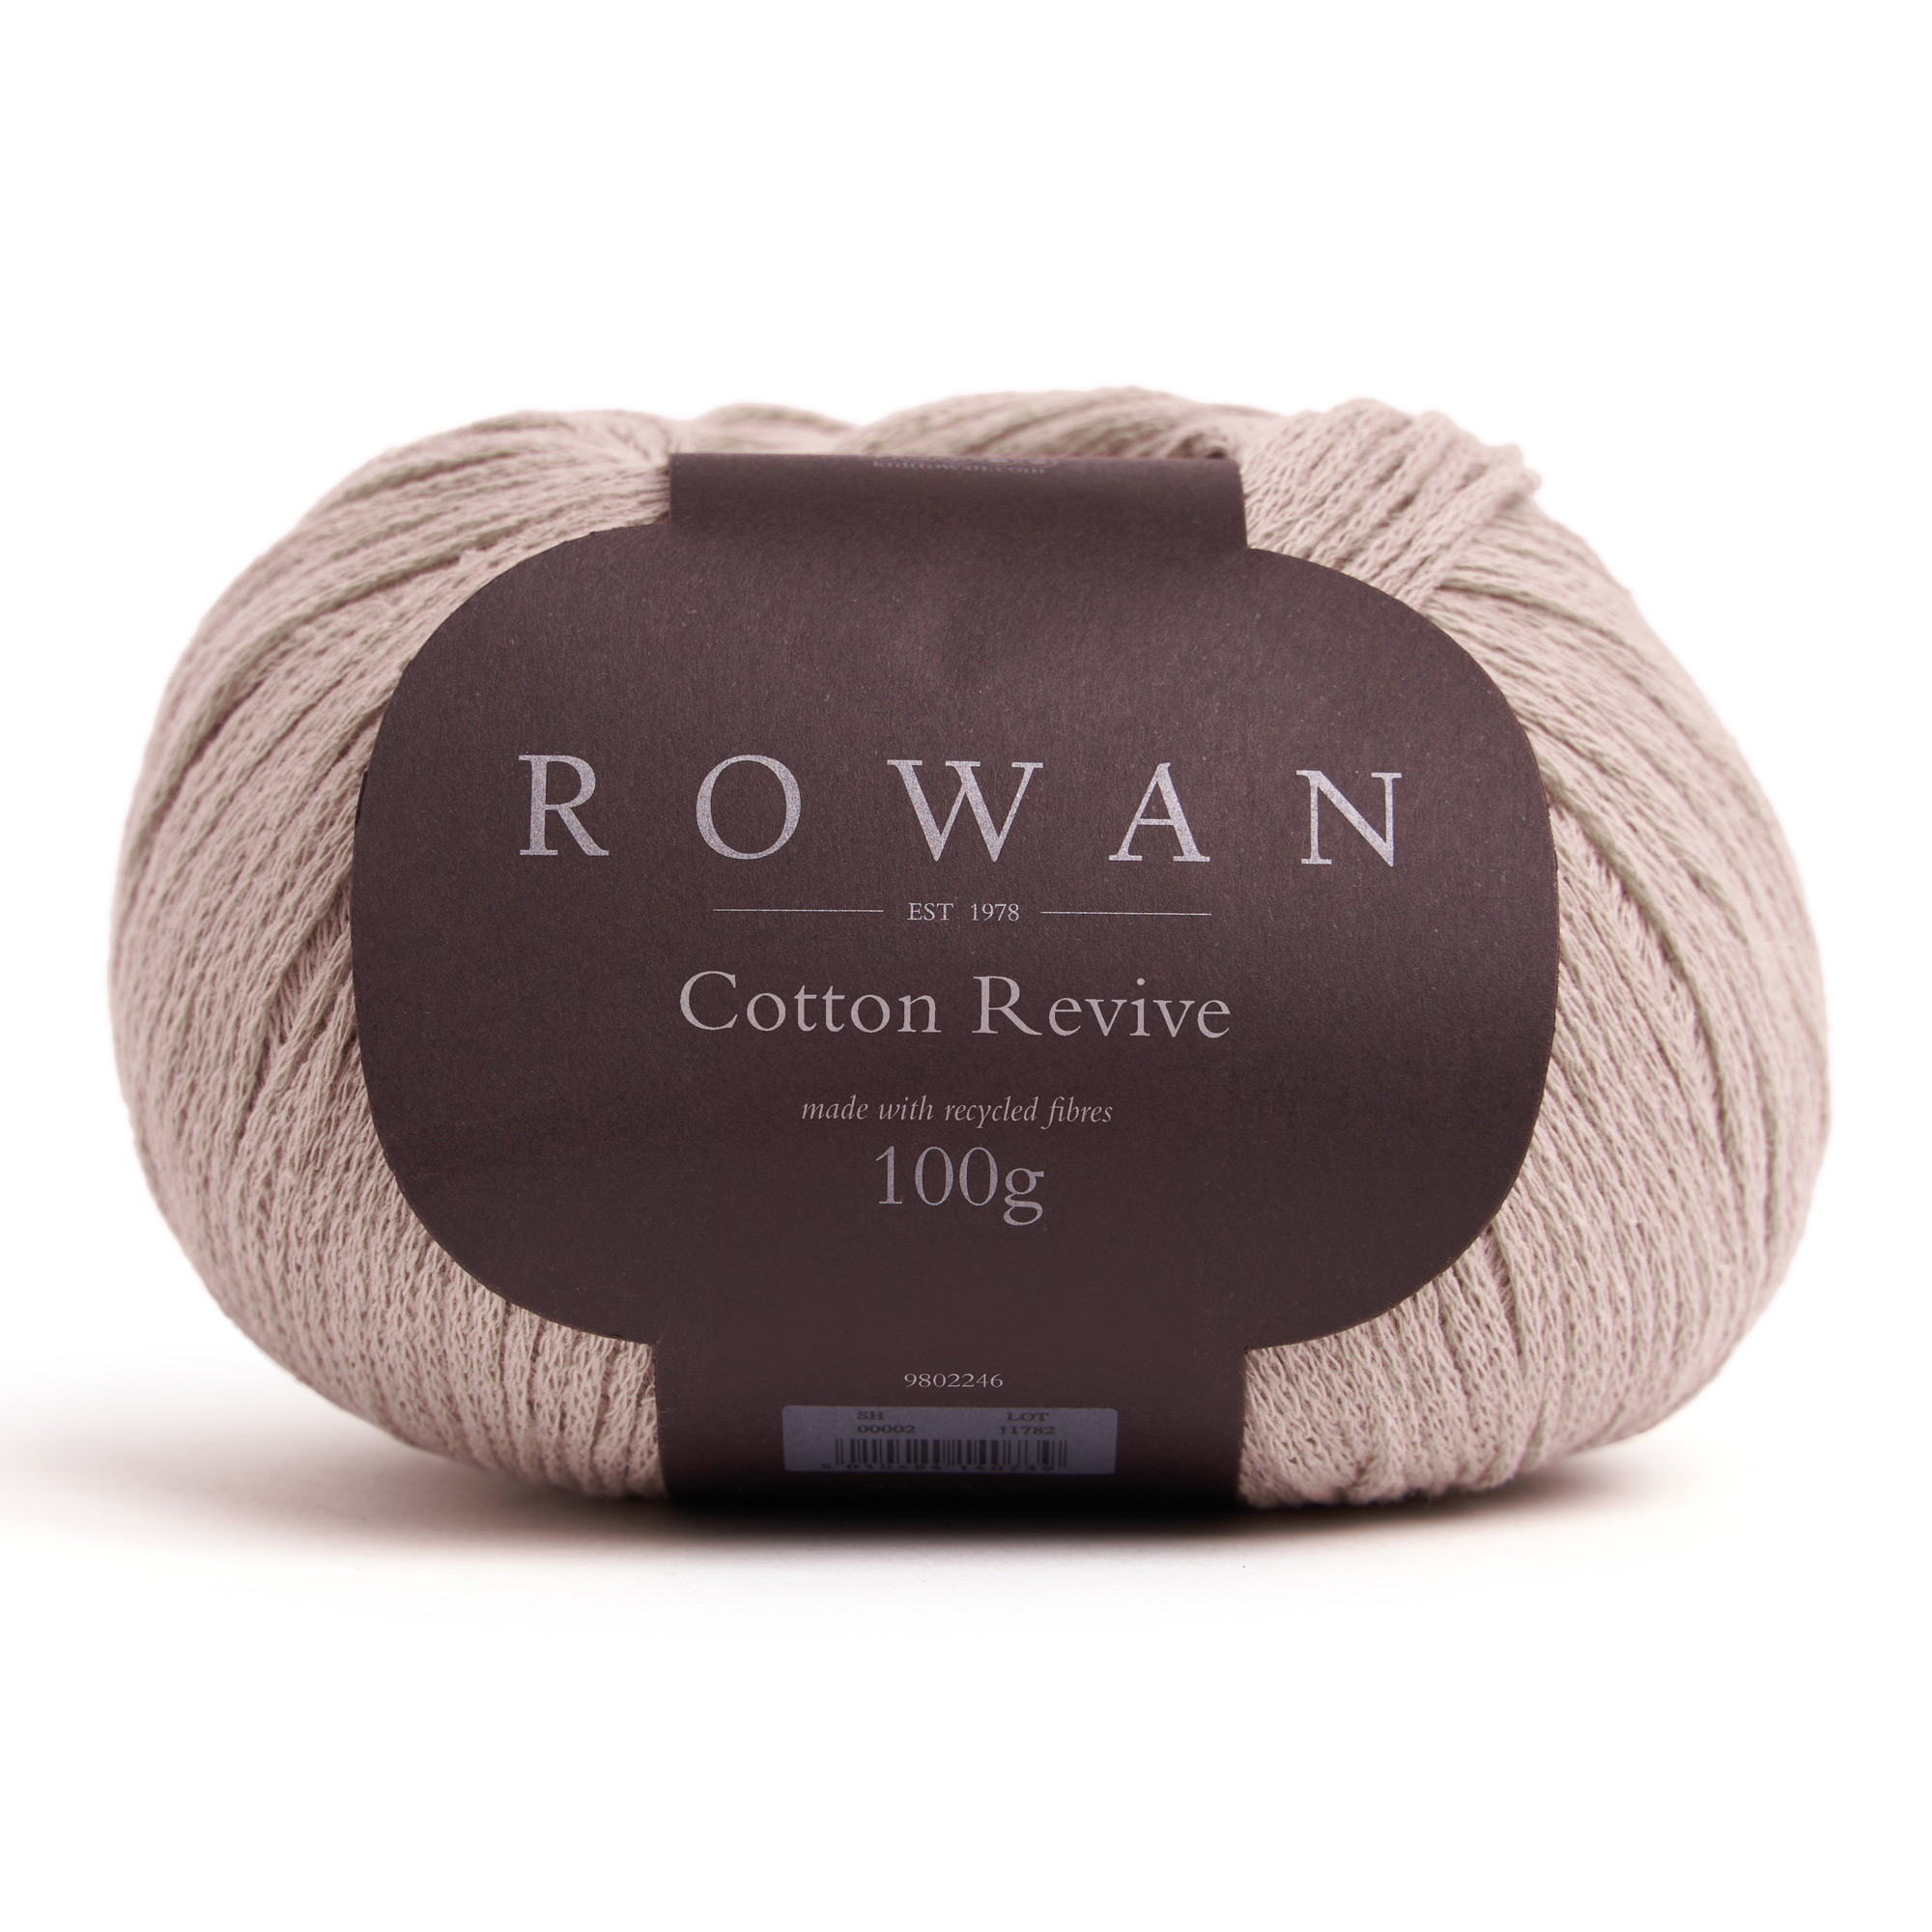 Rowan Cotton Revive breigaren verkrijgbaar kopen bij wolwinkel de Afstap Amsterdam en in onze webshop!